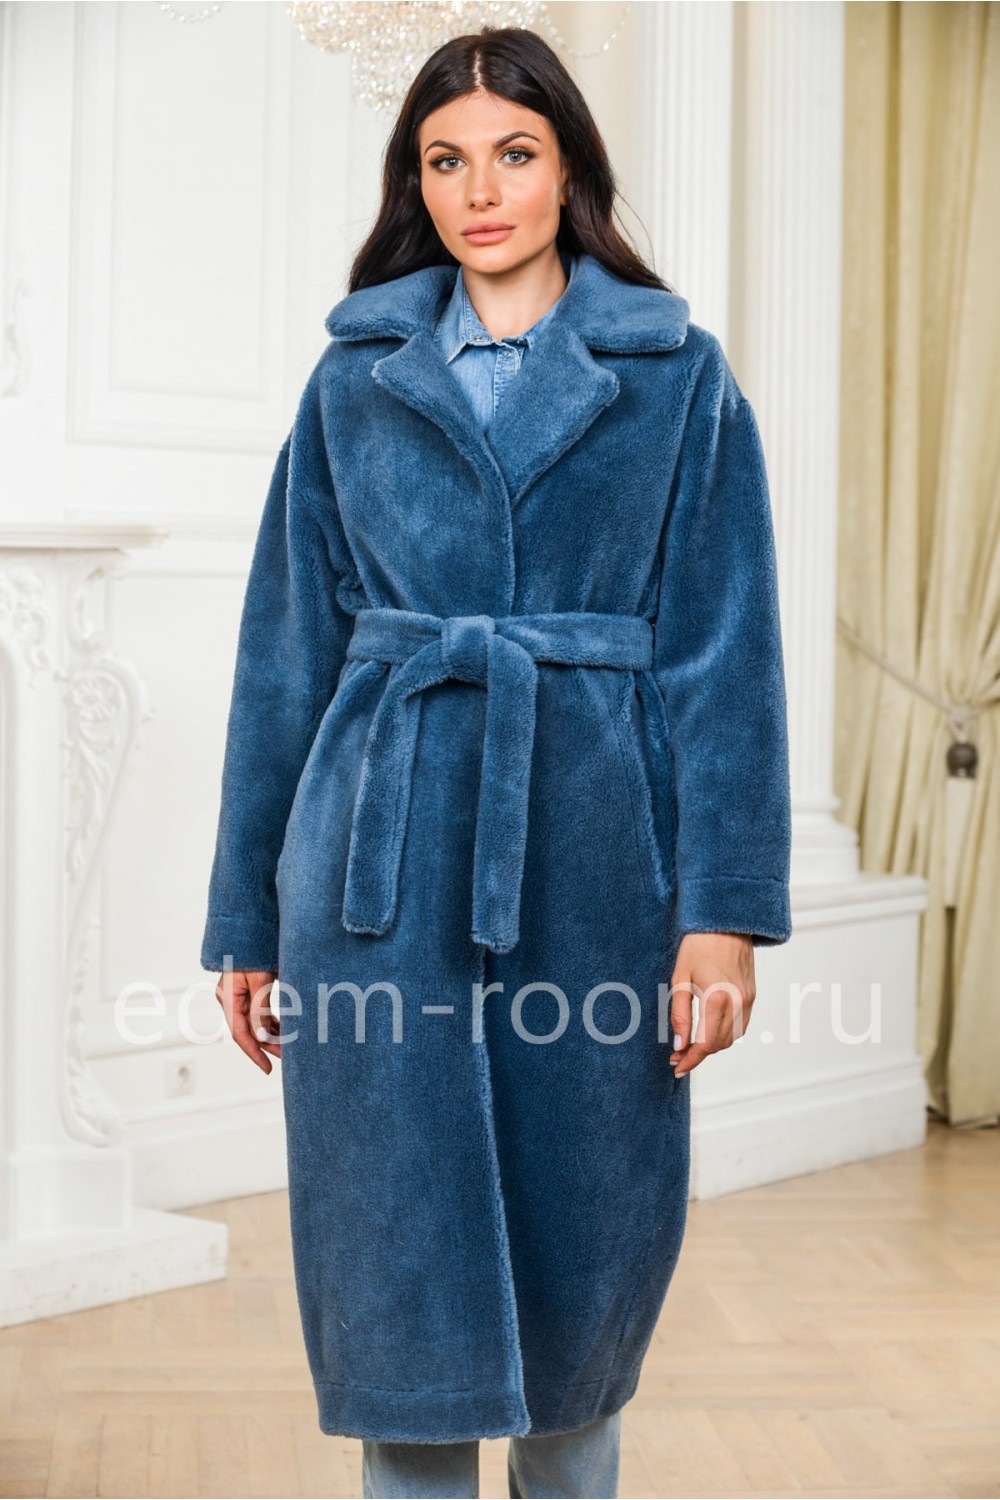 Шуба  - пальто из натуральной шерсти с поясом